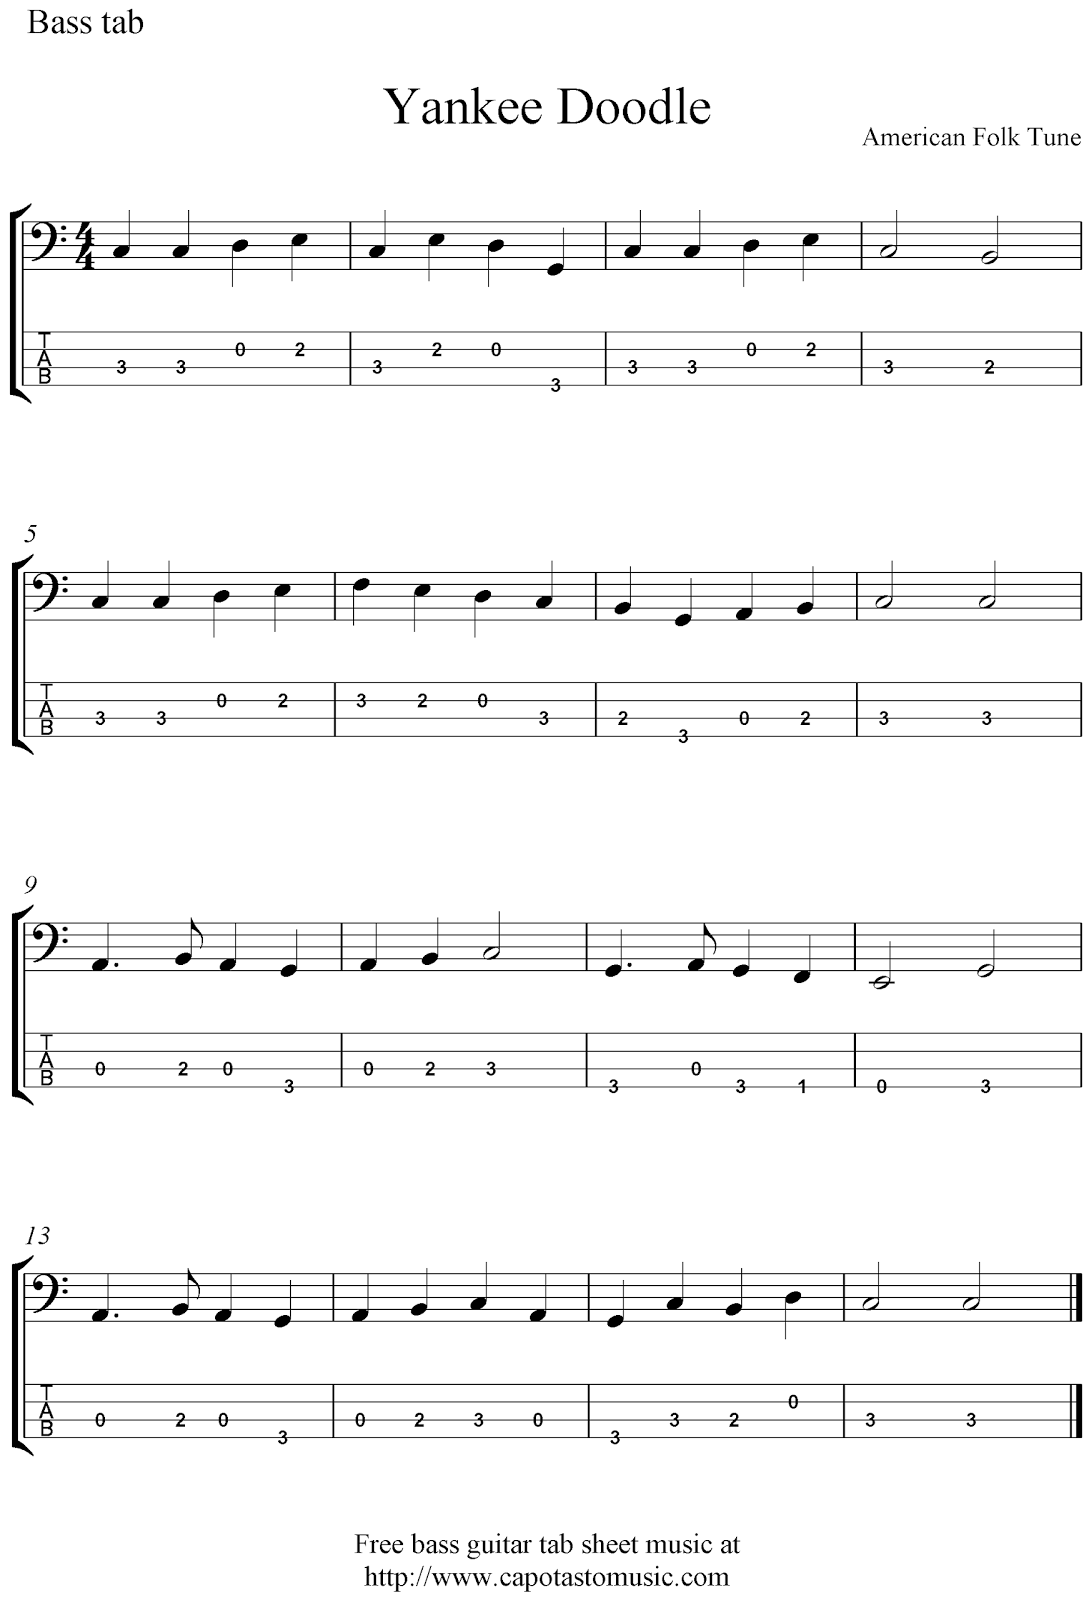 Free bass guitar tab sheet music, Yankee Doodle